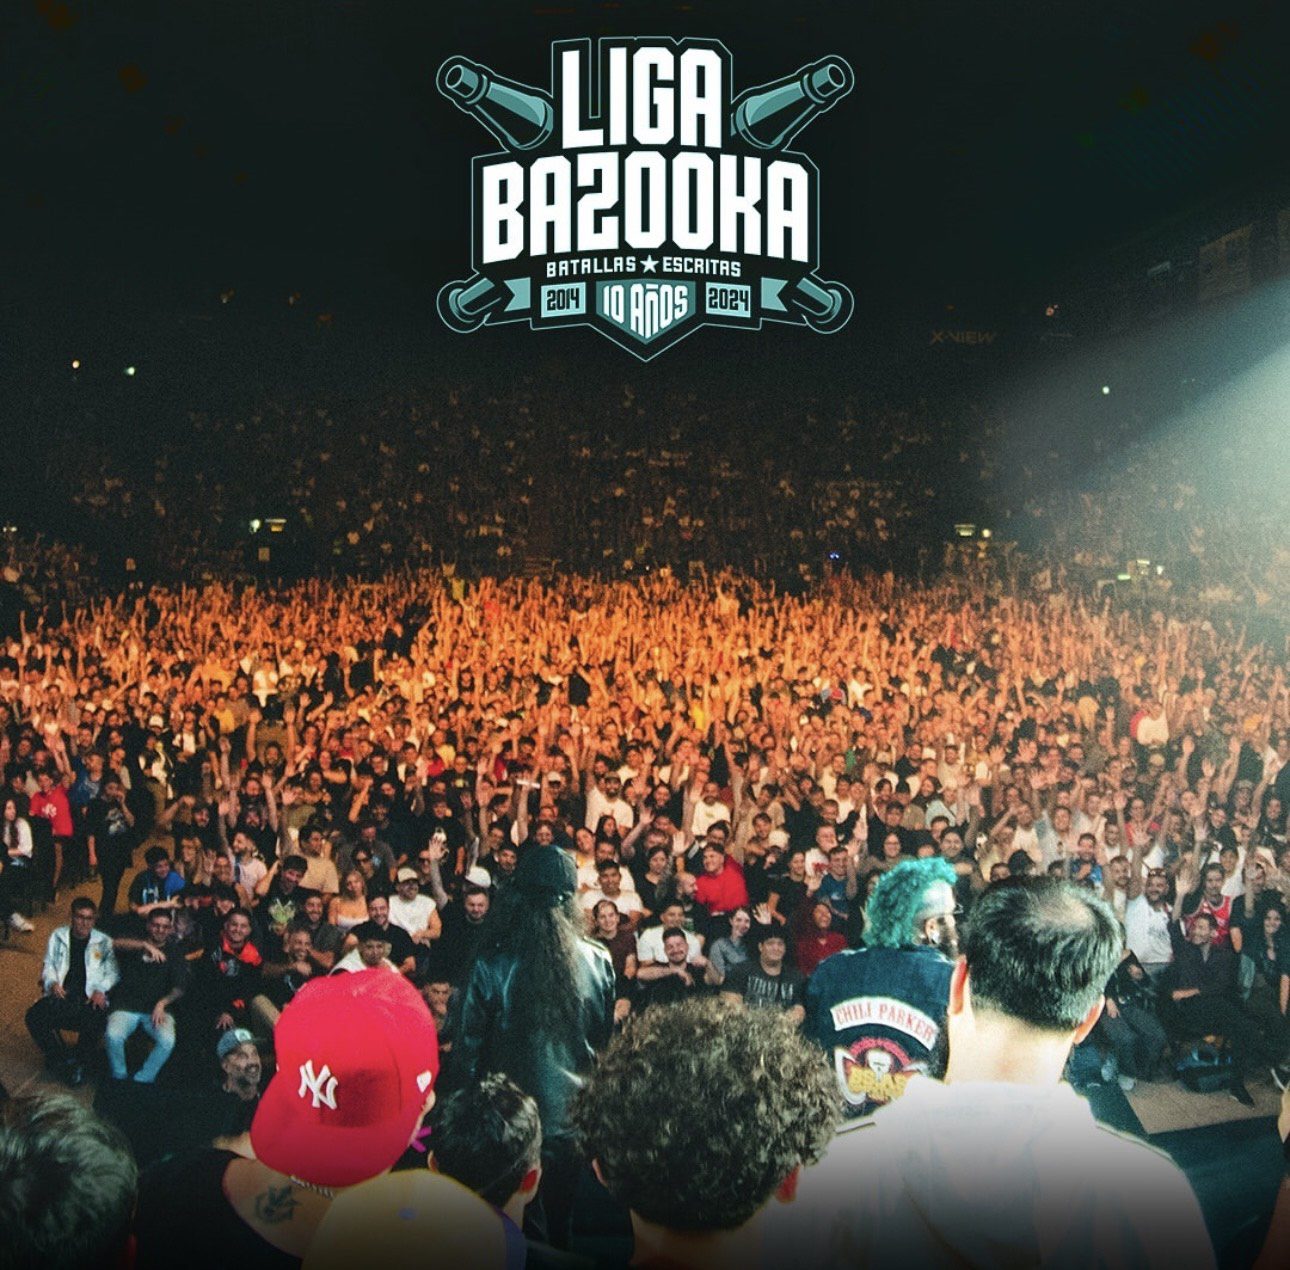 Liga Bazooka hizo sold out en el Luna Park (@7flexi)